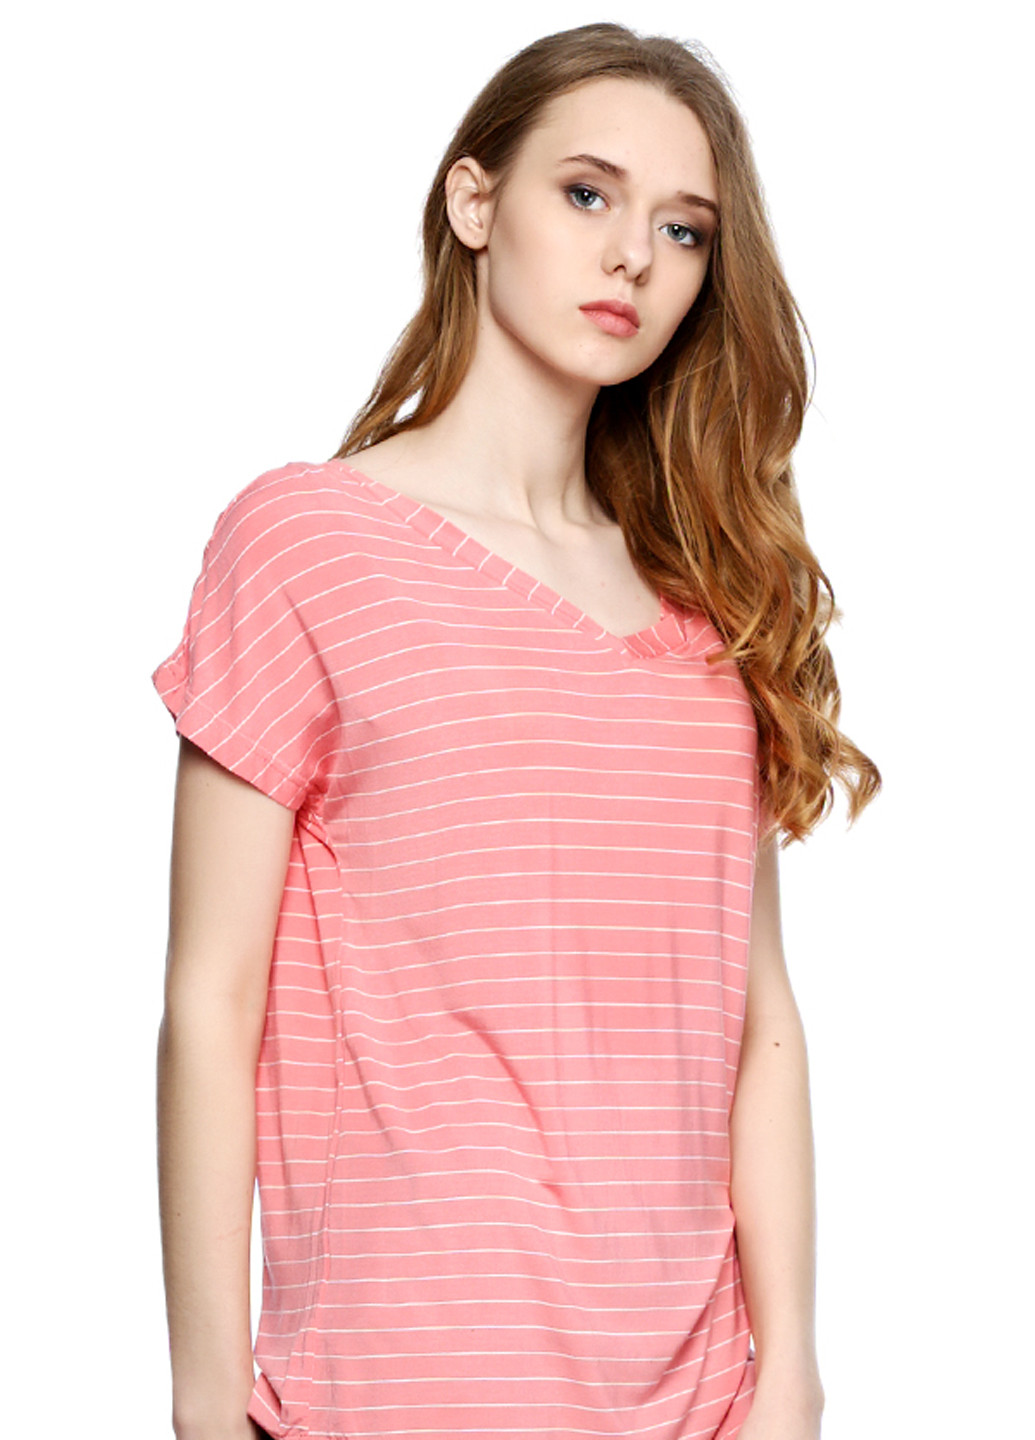 Розовая летняя футболка Яavin